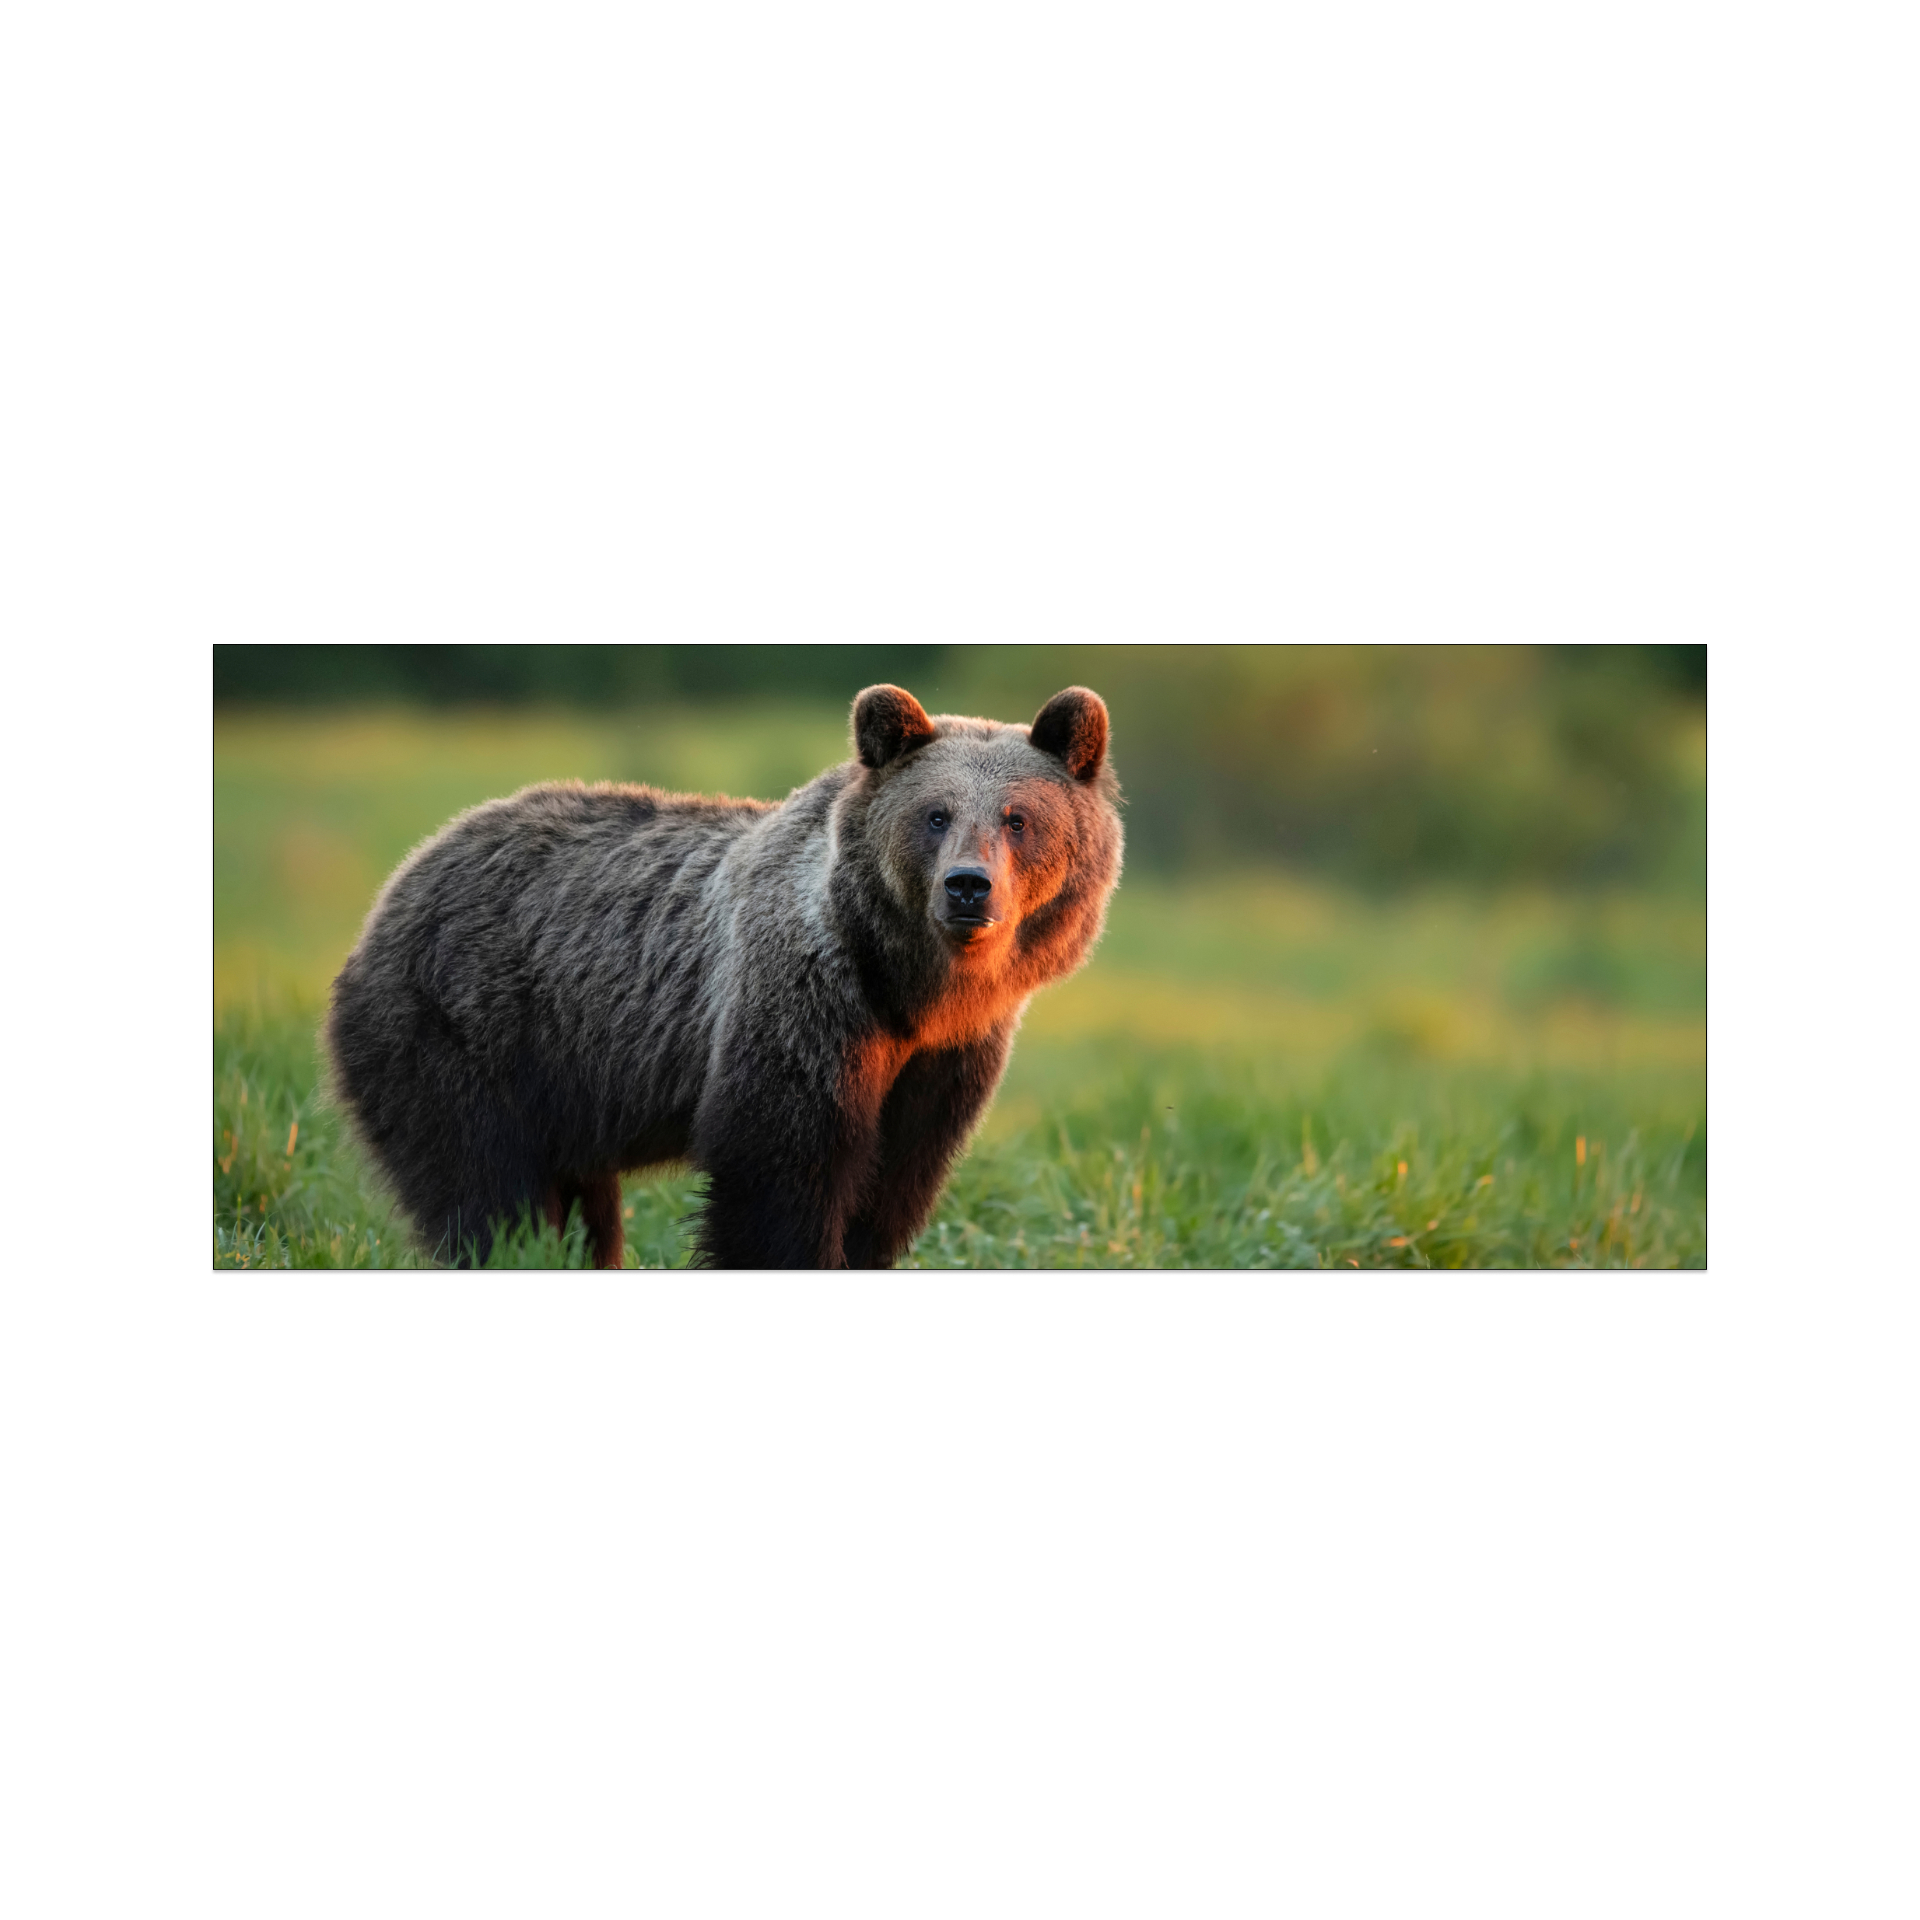 A brown fluffy bear standing among the green grass